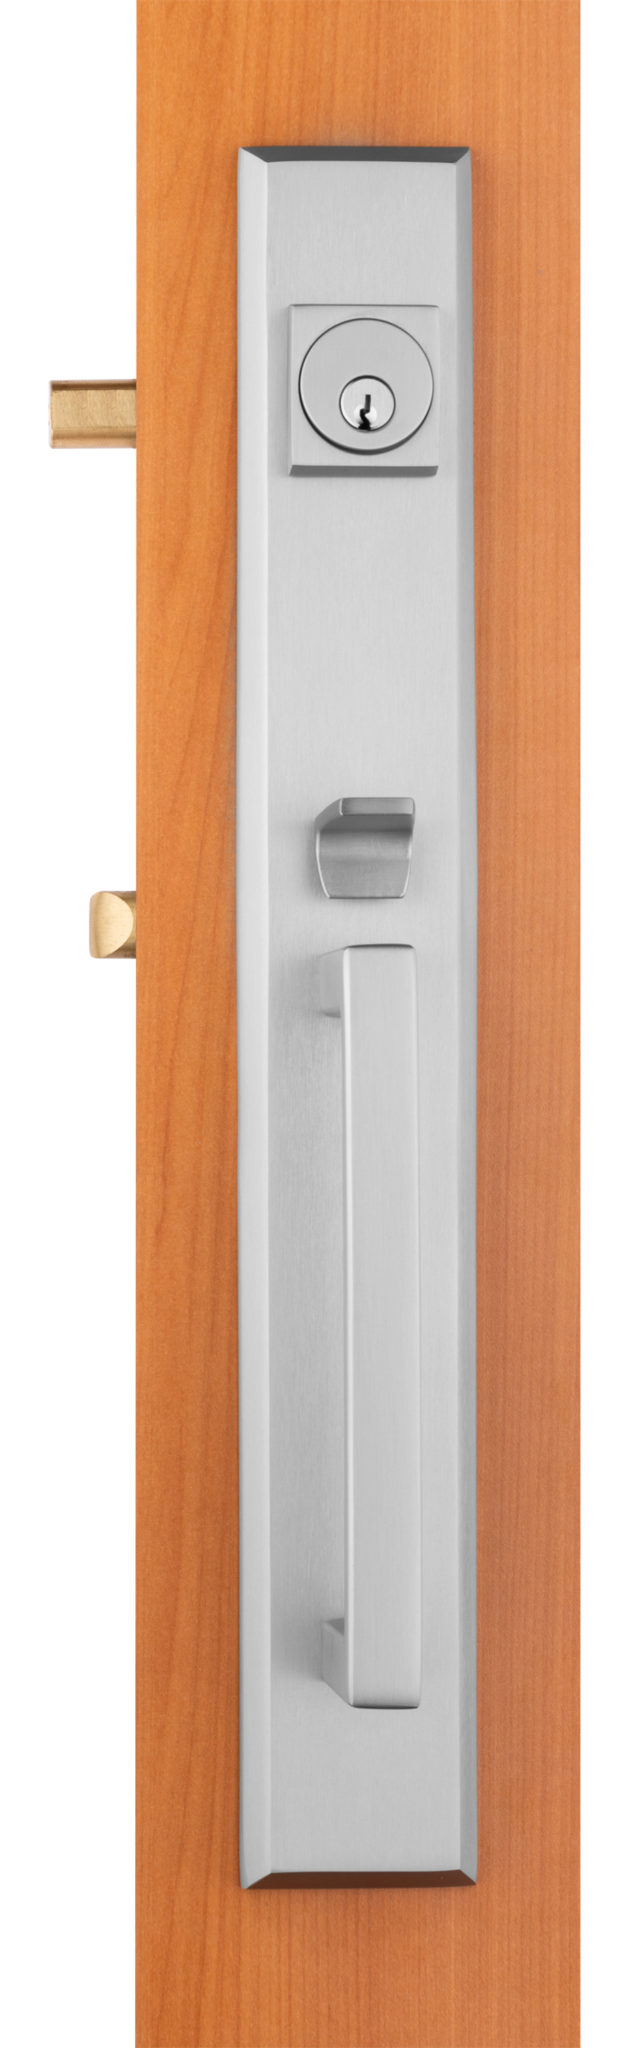 Solid Brass Entry Door Handle, Delta Lever